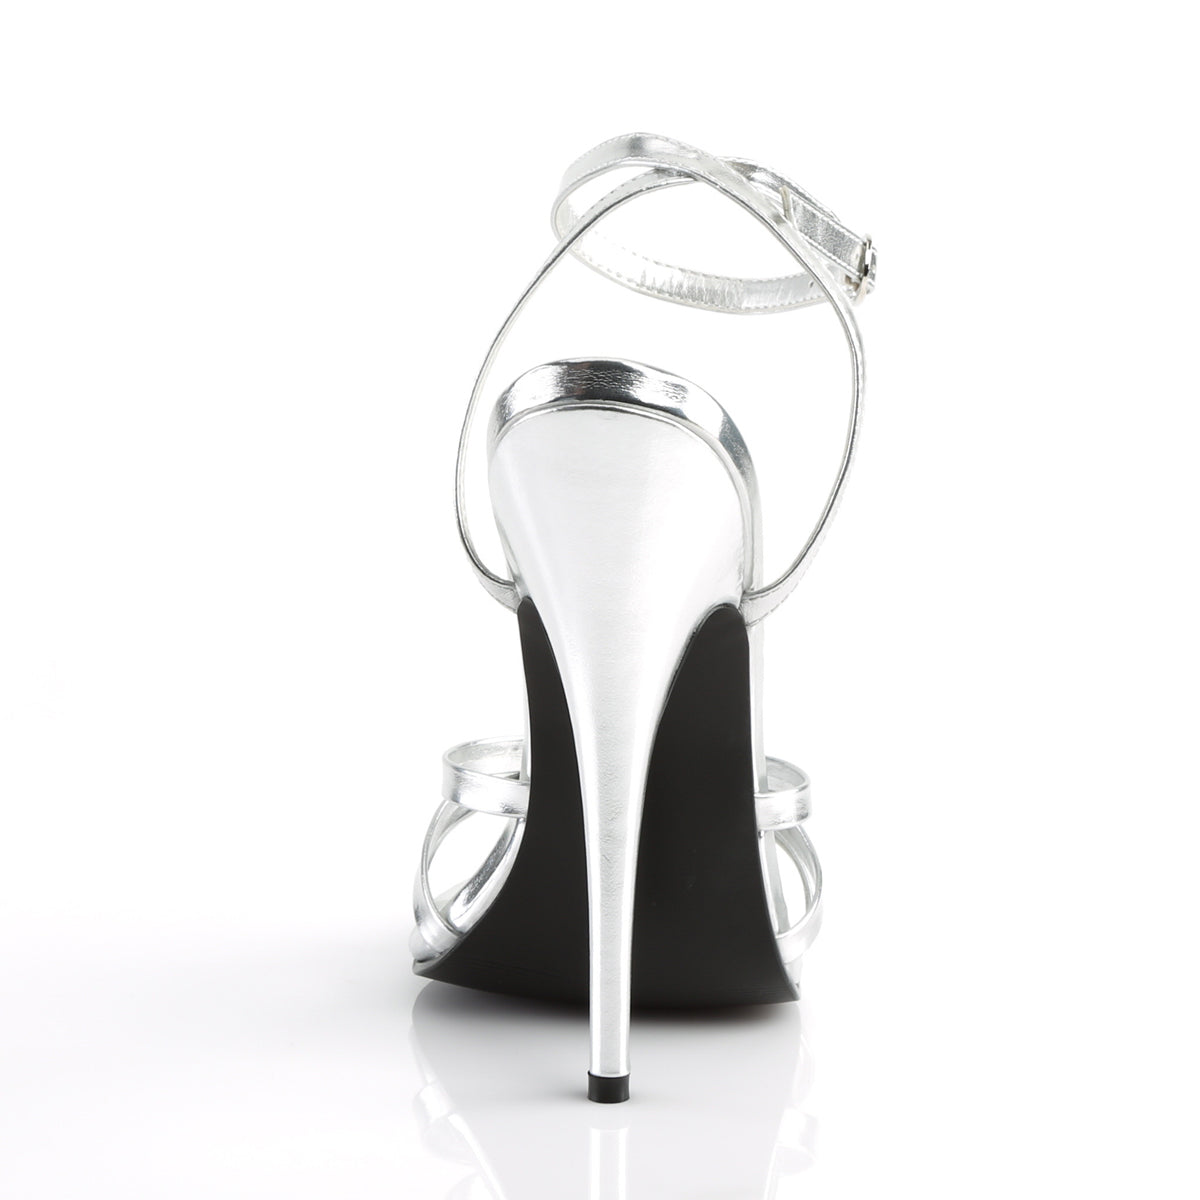 Devious Sandali da donna DOMINA-108 PU metallizzato in argento